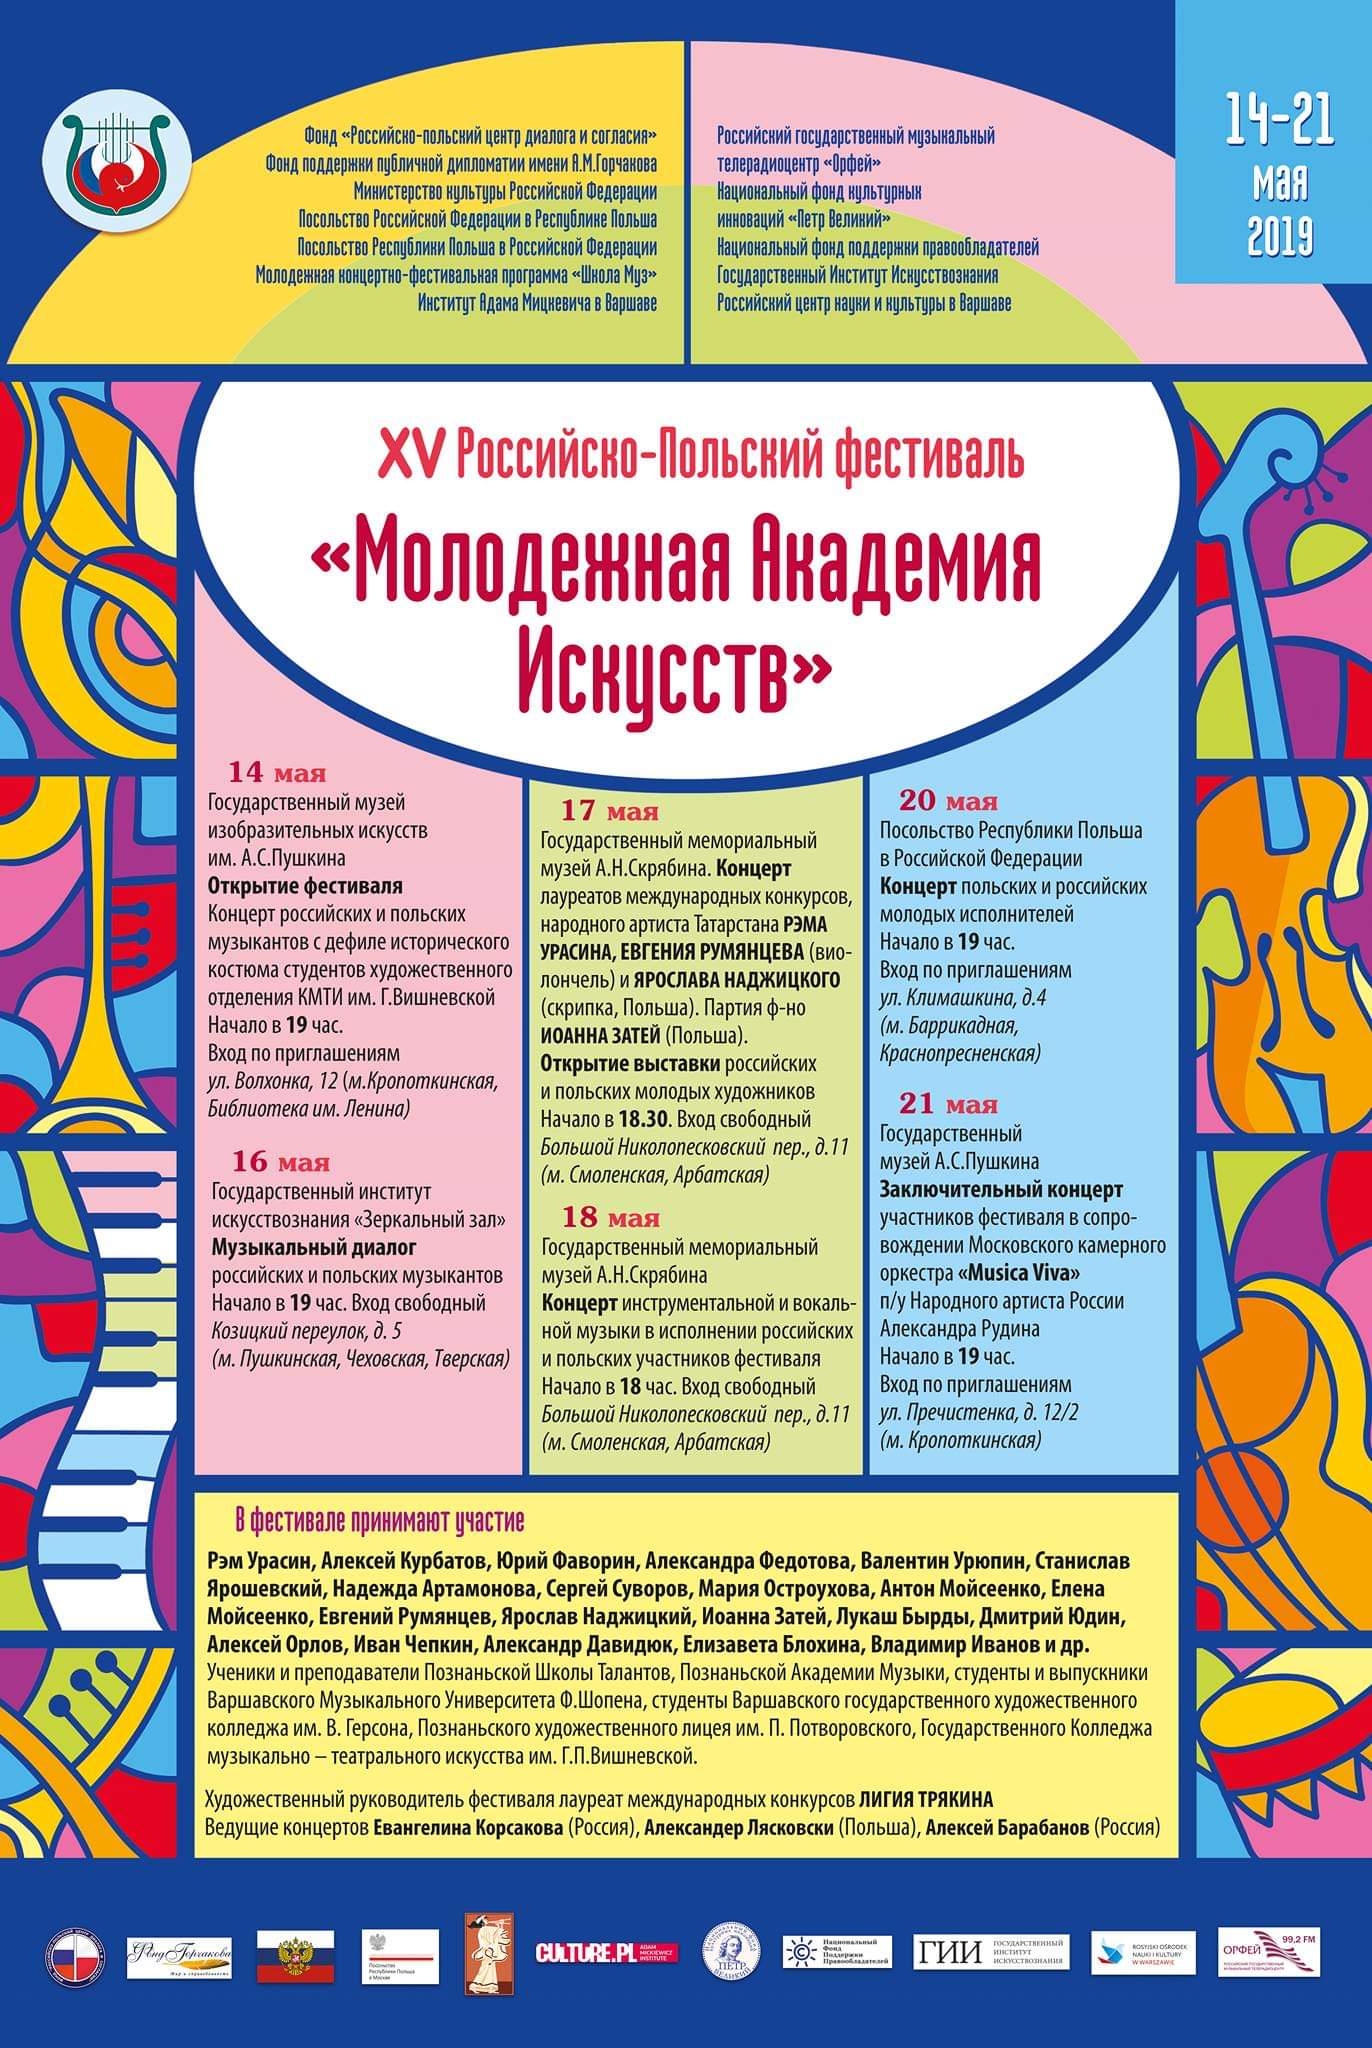 При поддержке НФПП в Москве проходит XV Российско-польский фестиваль «Молодежная академия искусств»